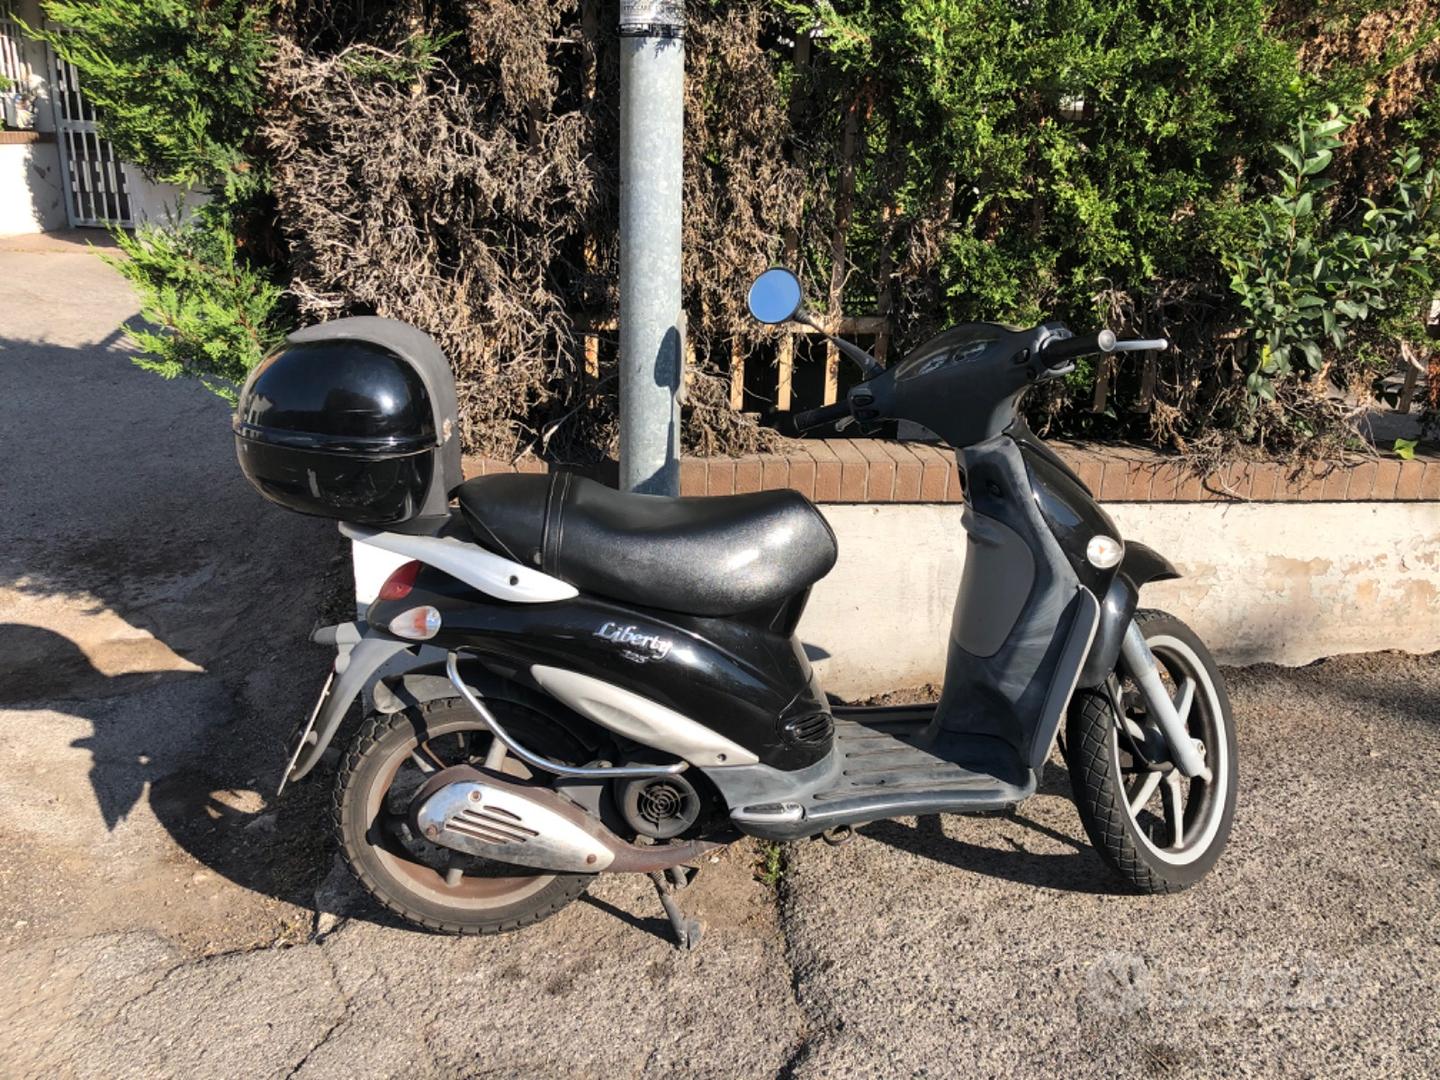 Piaggio Liberty 125 - 2002 - Moto e Scooter In vendita a Latina